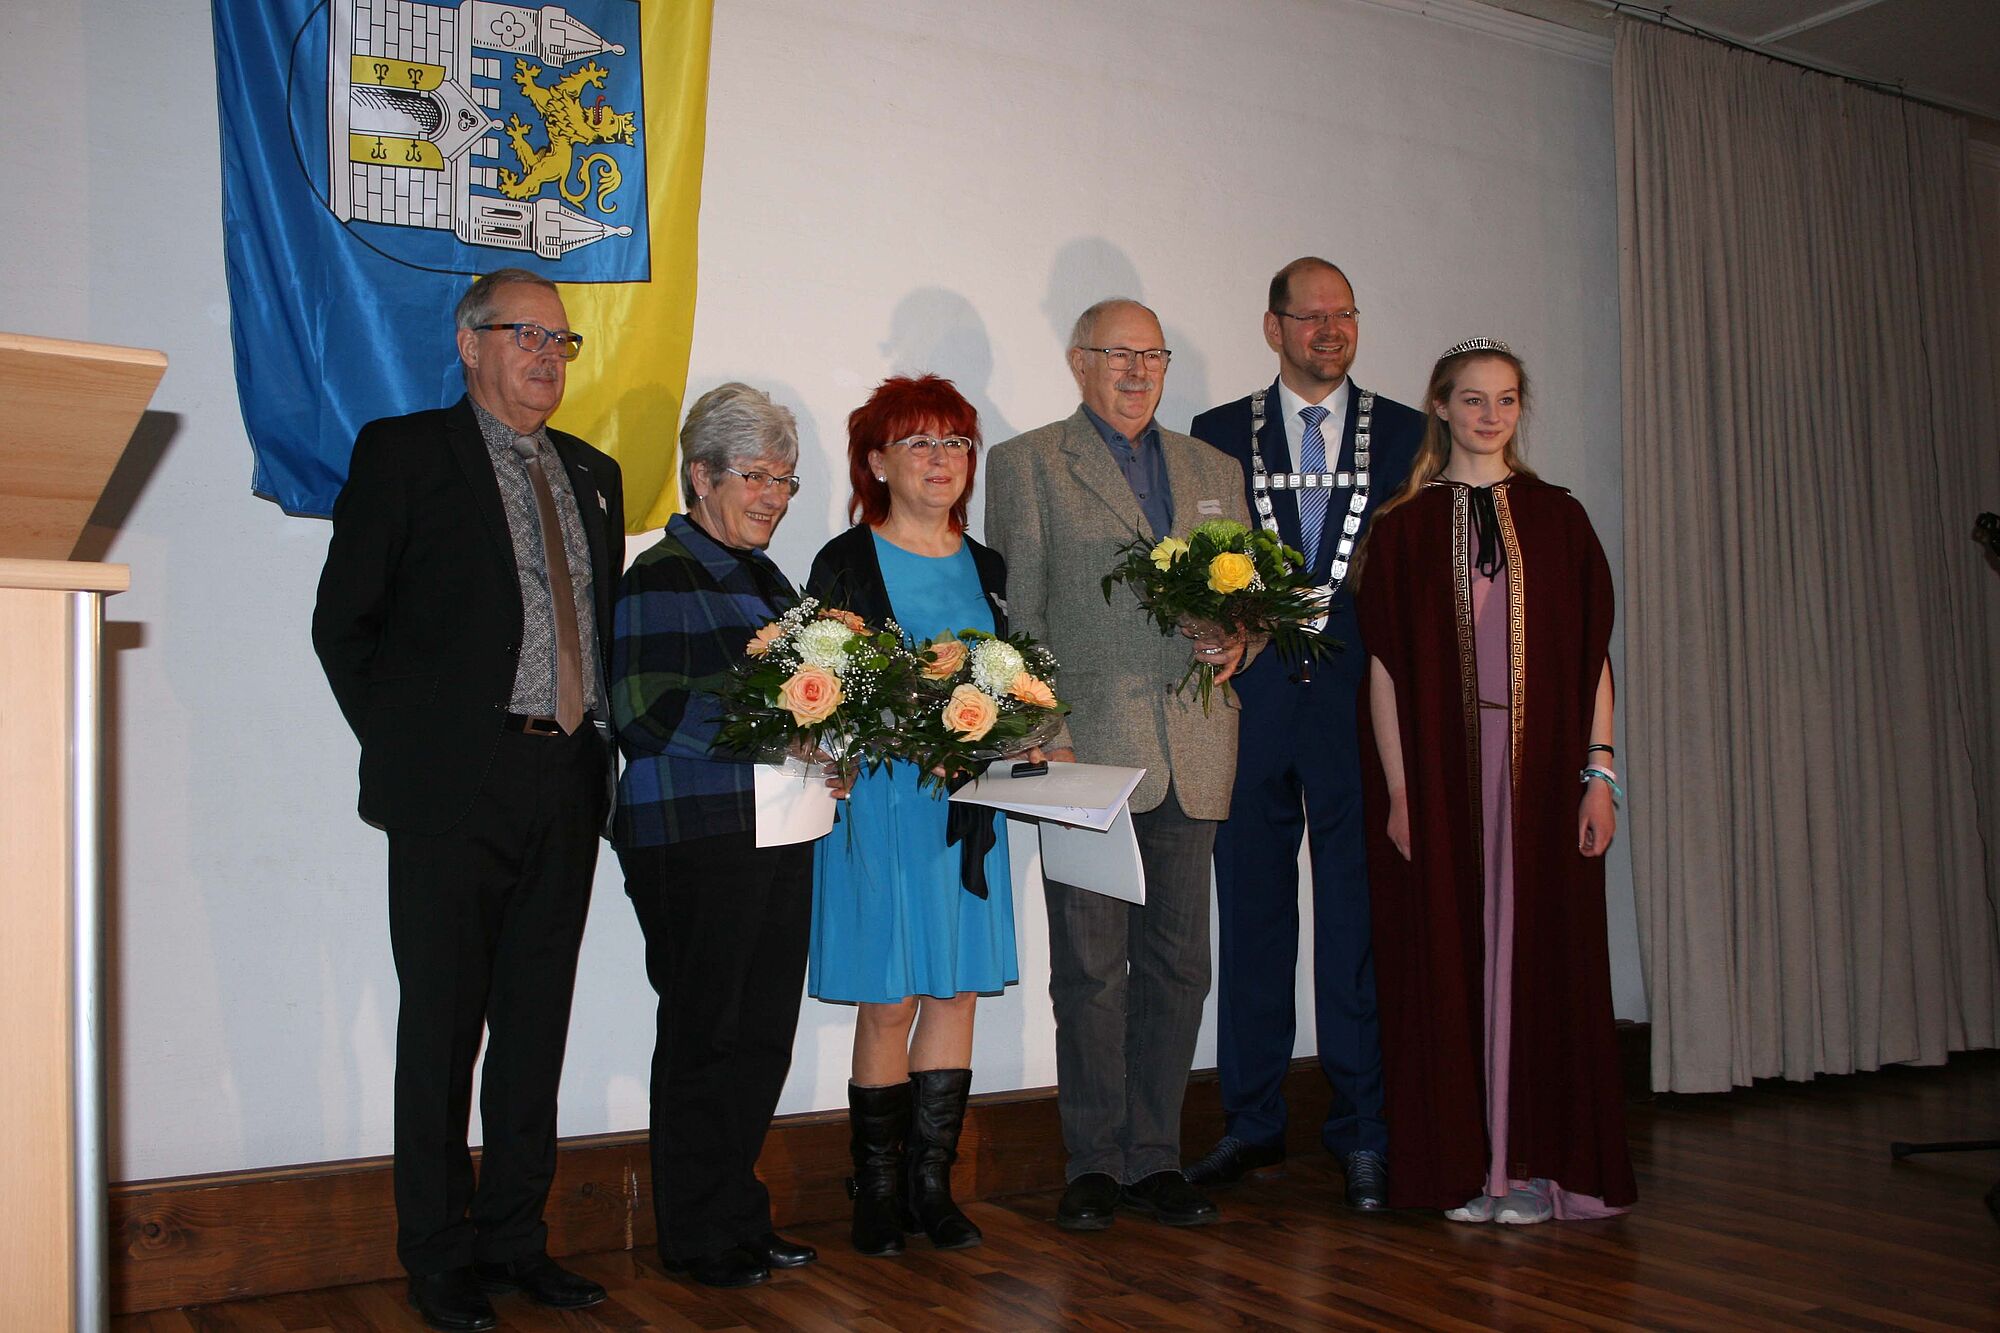 Verleihung des Stadttaler zum Neujahrsempfang des Bürgermeisters